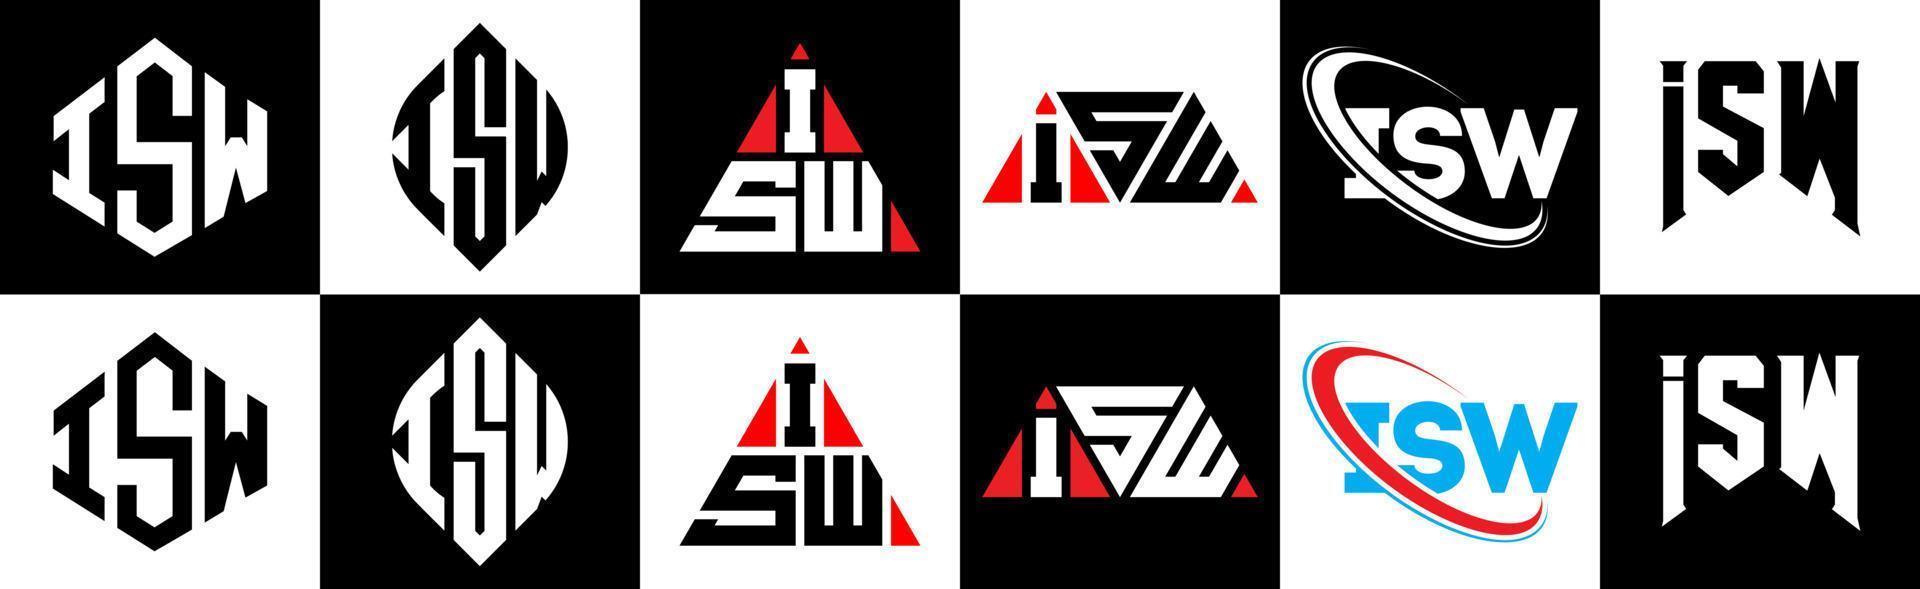 création de logo de lettre isw en six styles. isw polygone, cercle, triangle, hexagone, style plat et simple avec logo de lettre de variation de couleur noir et blanc dans un plan de travail. isw logo minimaliste et classique vecteur